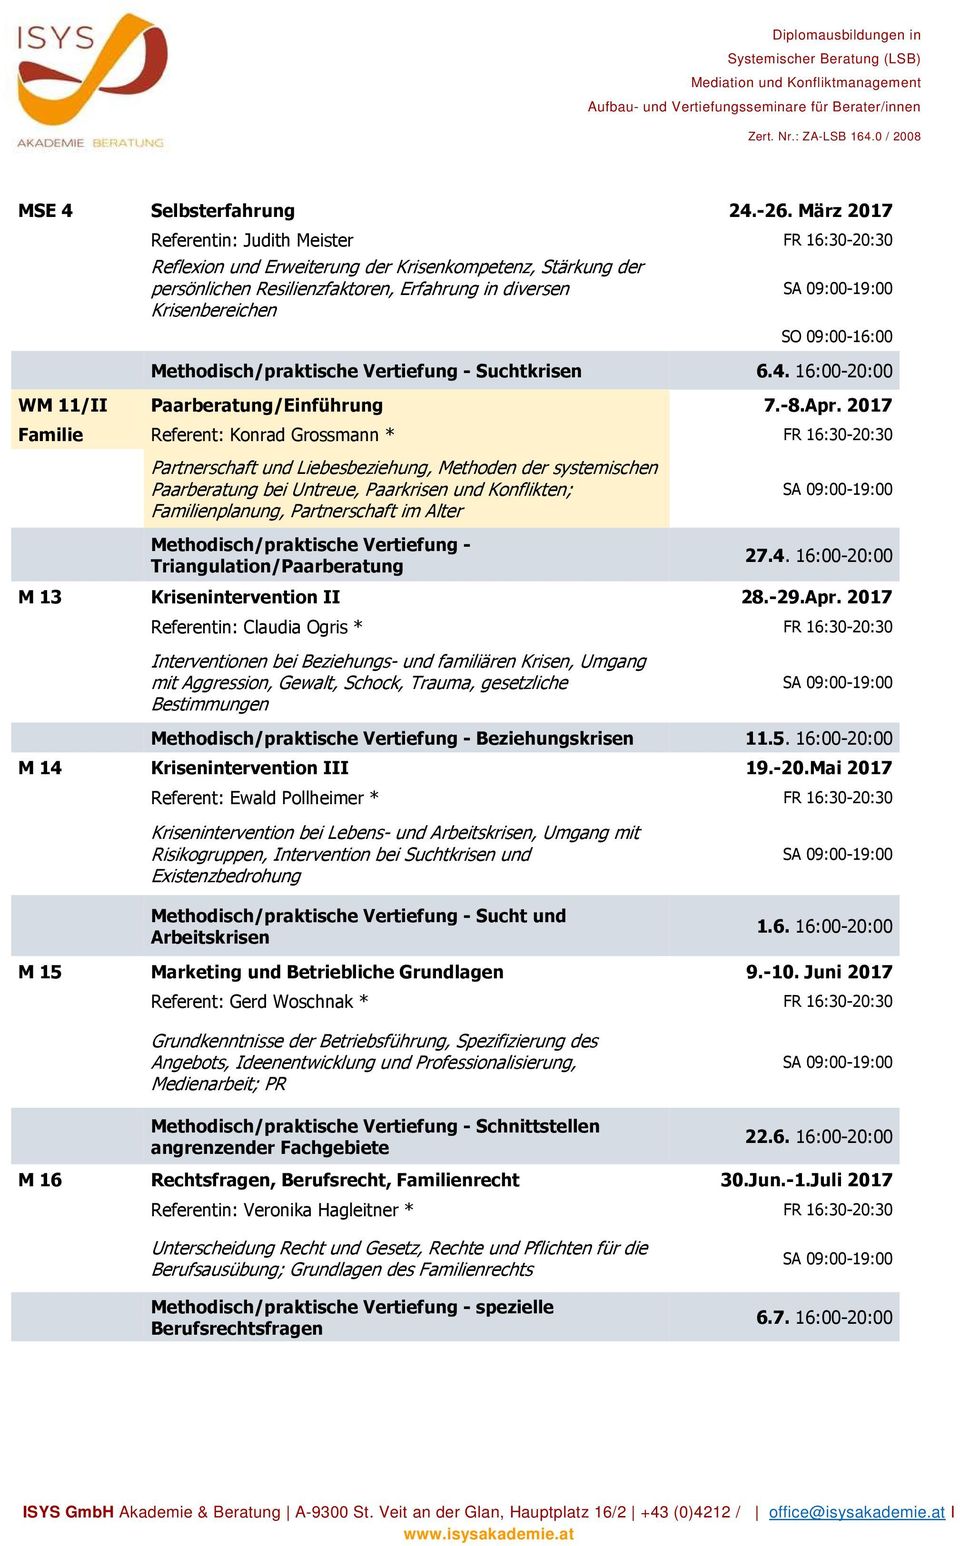 Methodisch/praktische Vertiefung - Suchtkrisen 6.4. 16:00-20:00 WM 11/II Paarberatung/Einführung 7.-8.Apr.